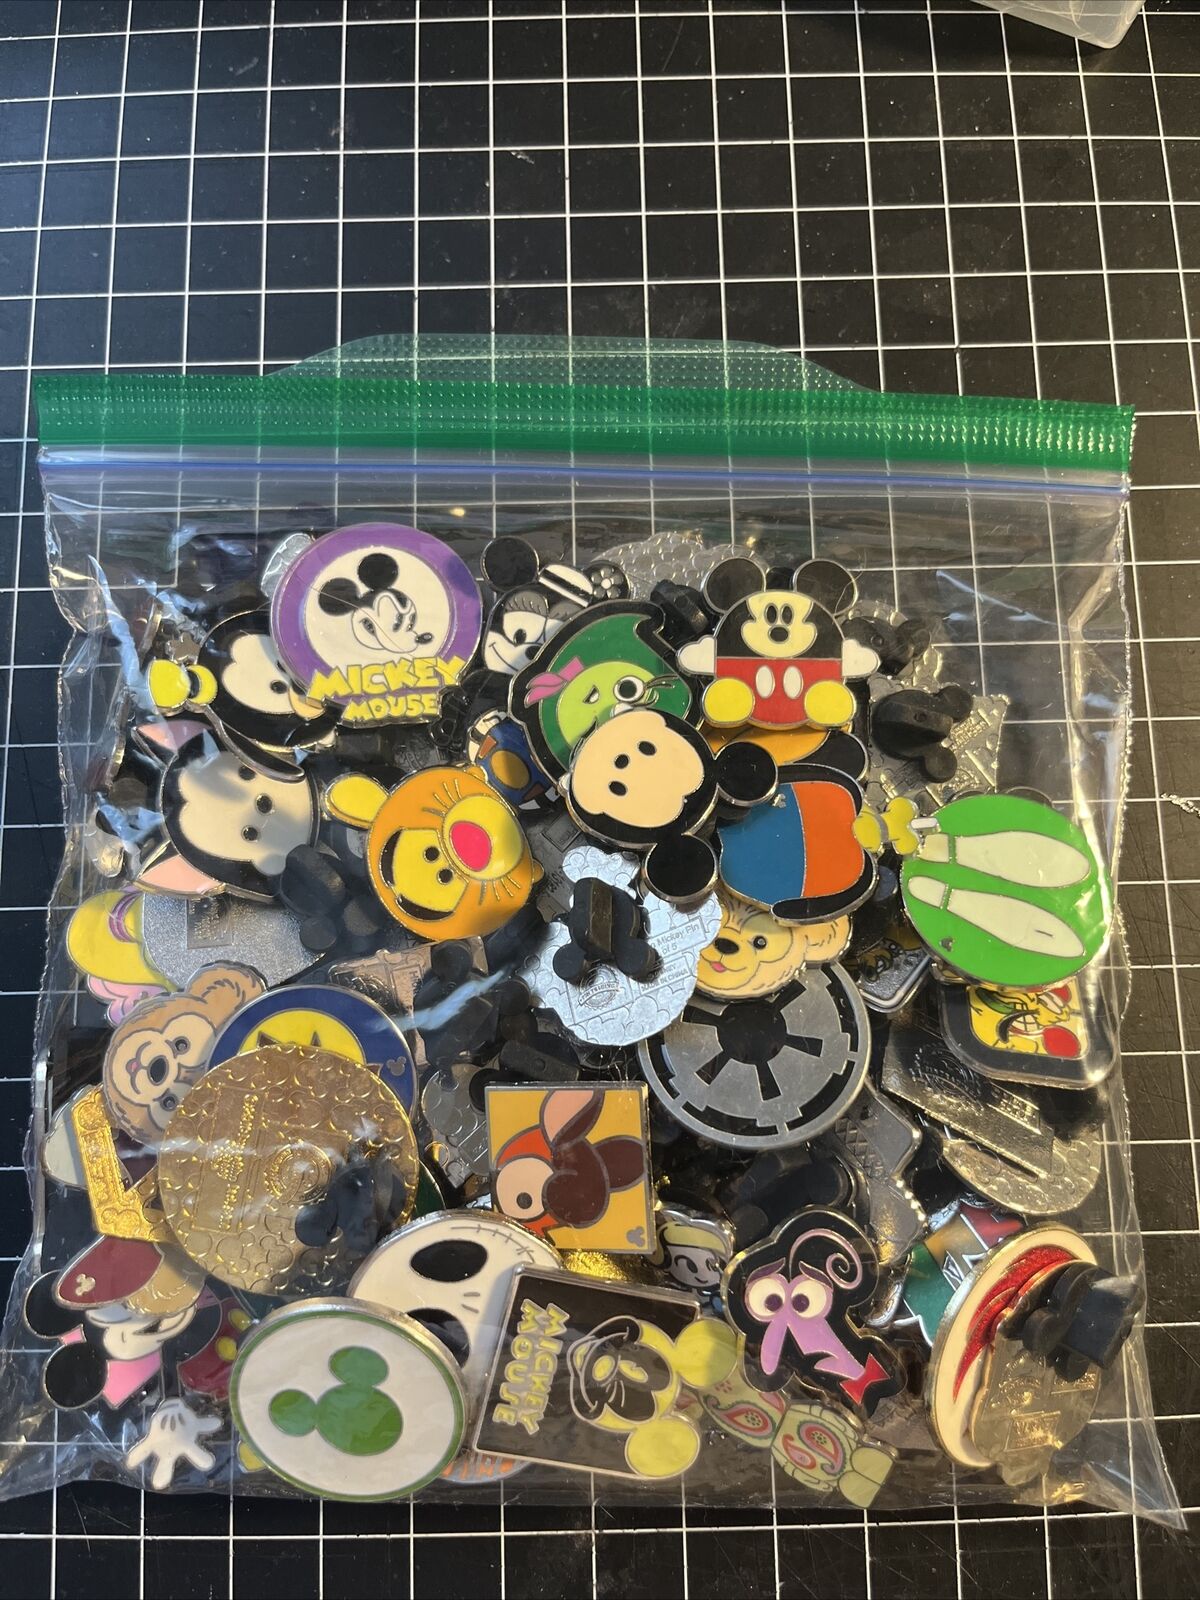 Disney Trading Pin Lot Of 65 Pins